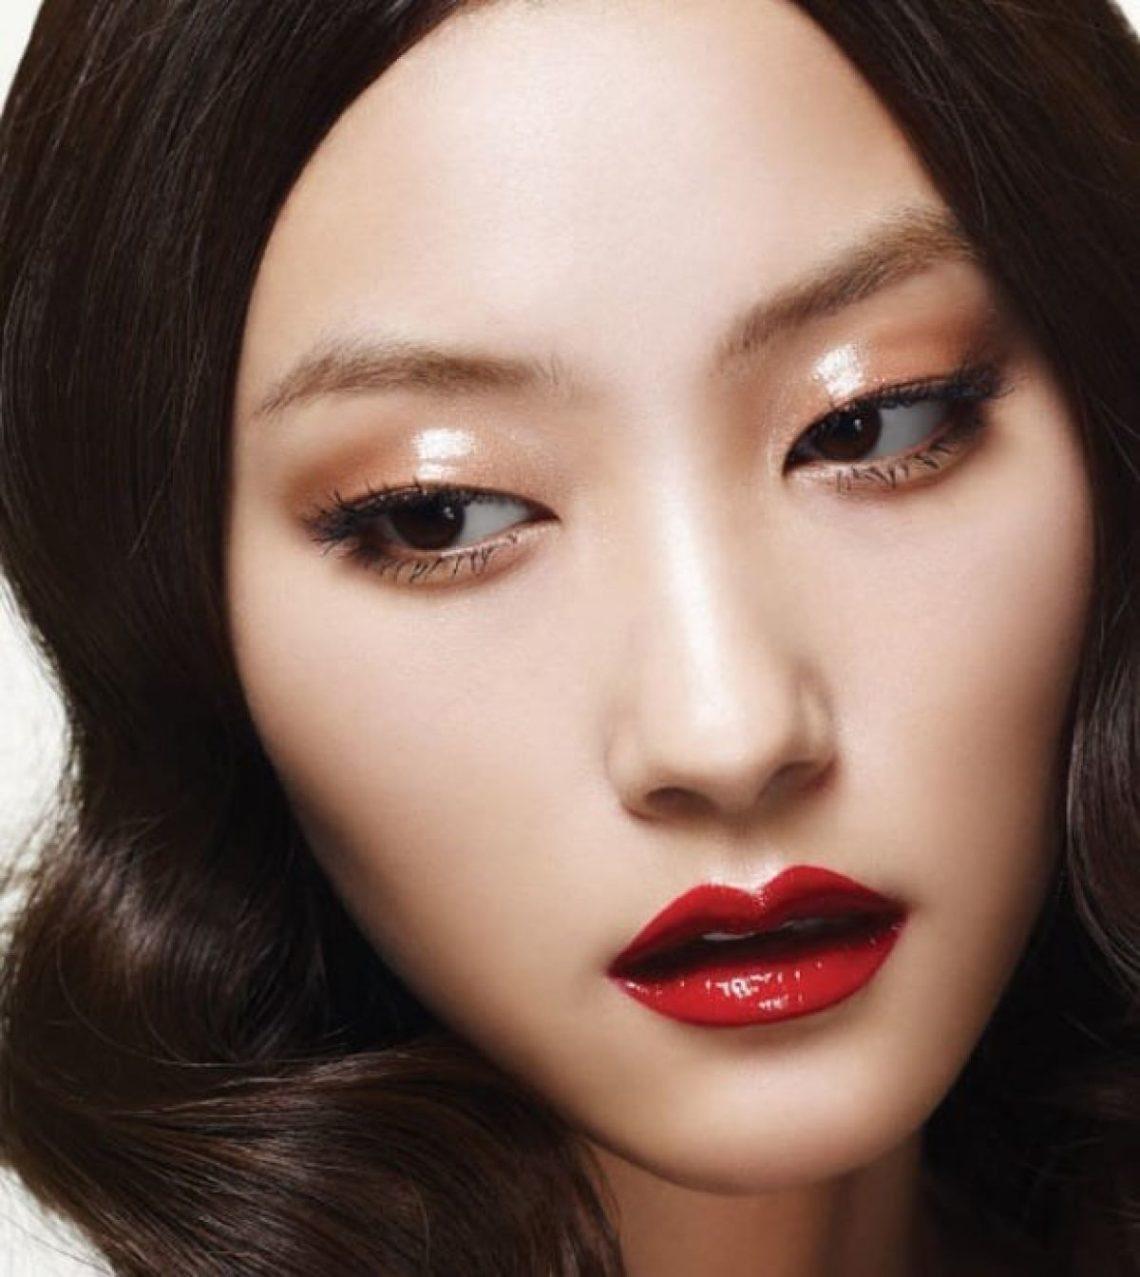 Asian makeup brands